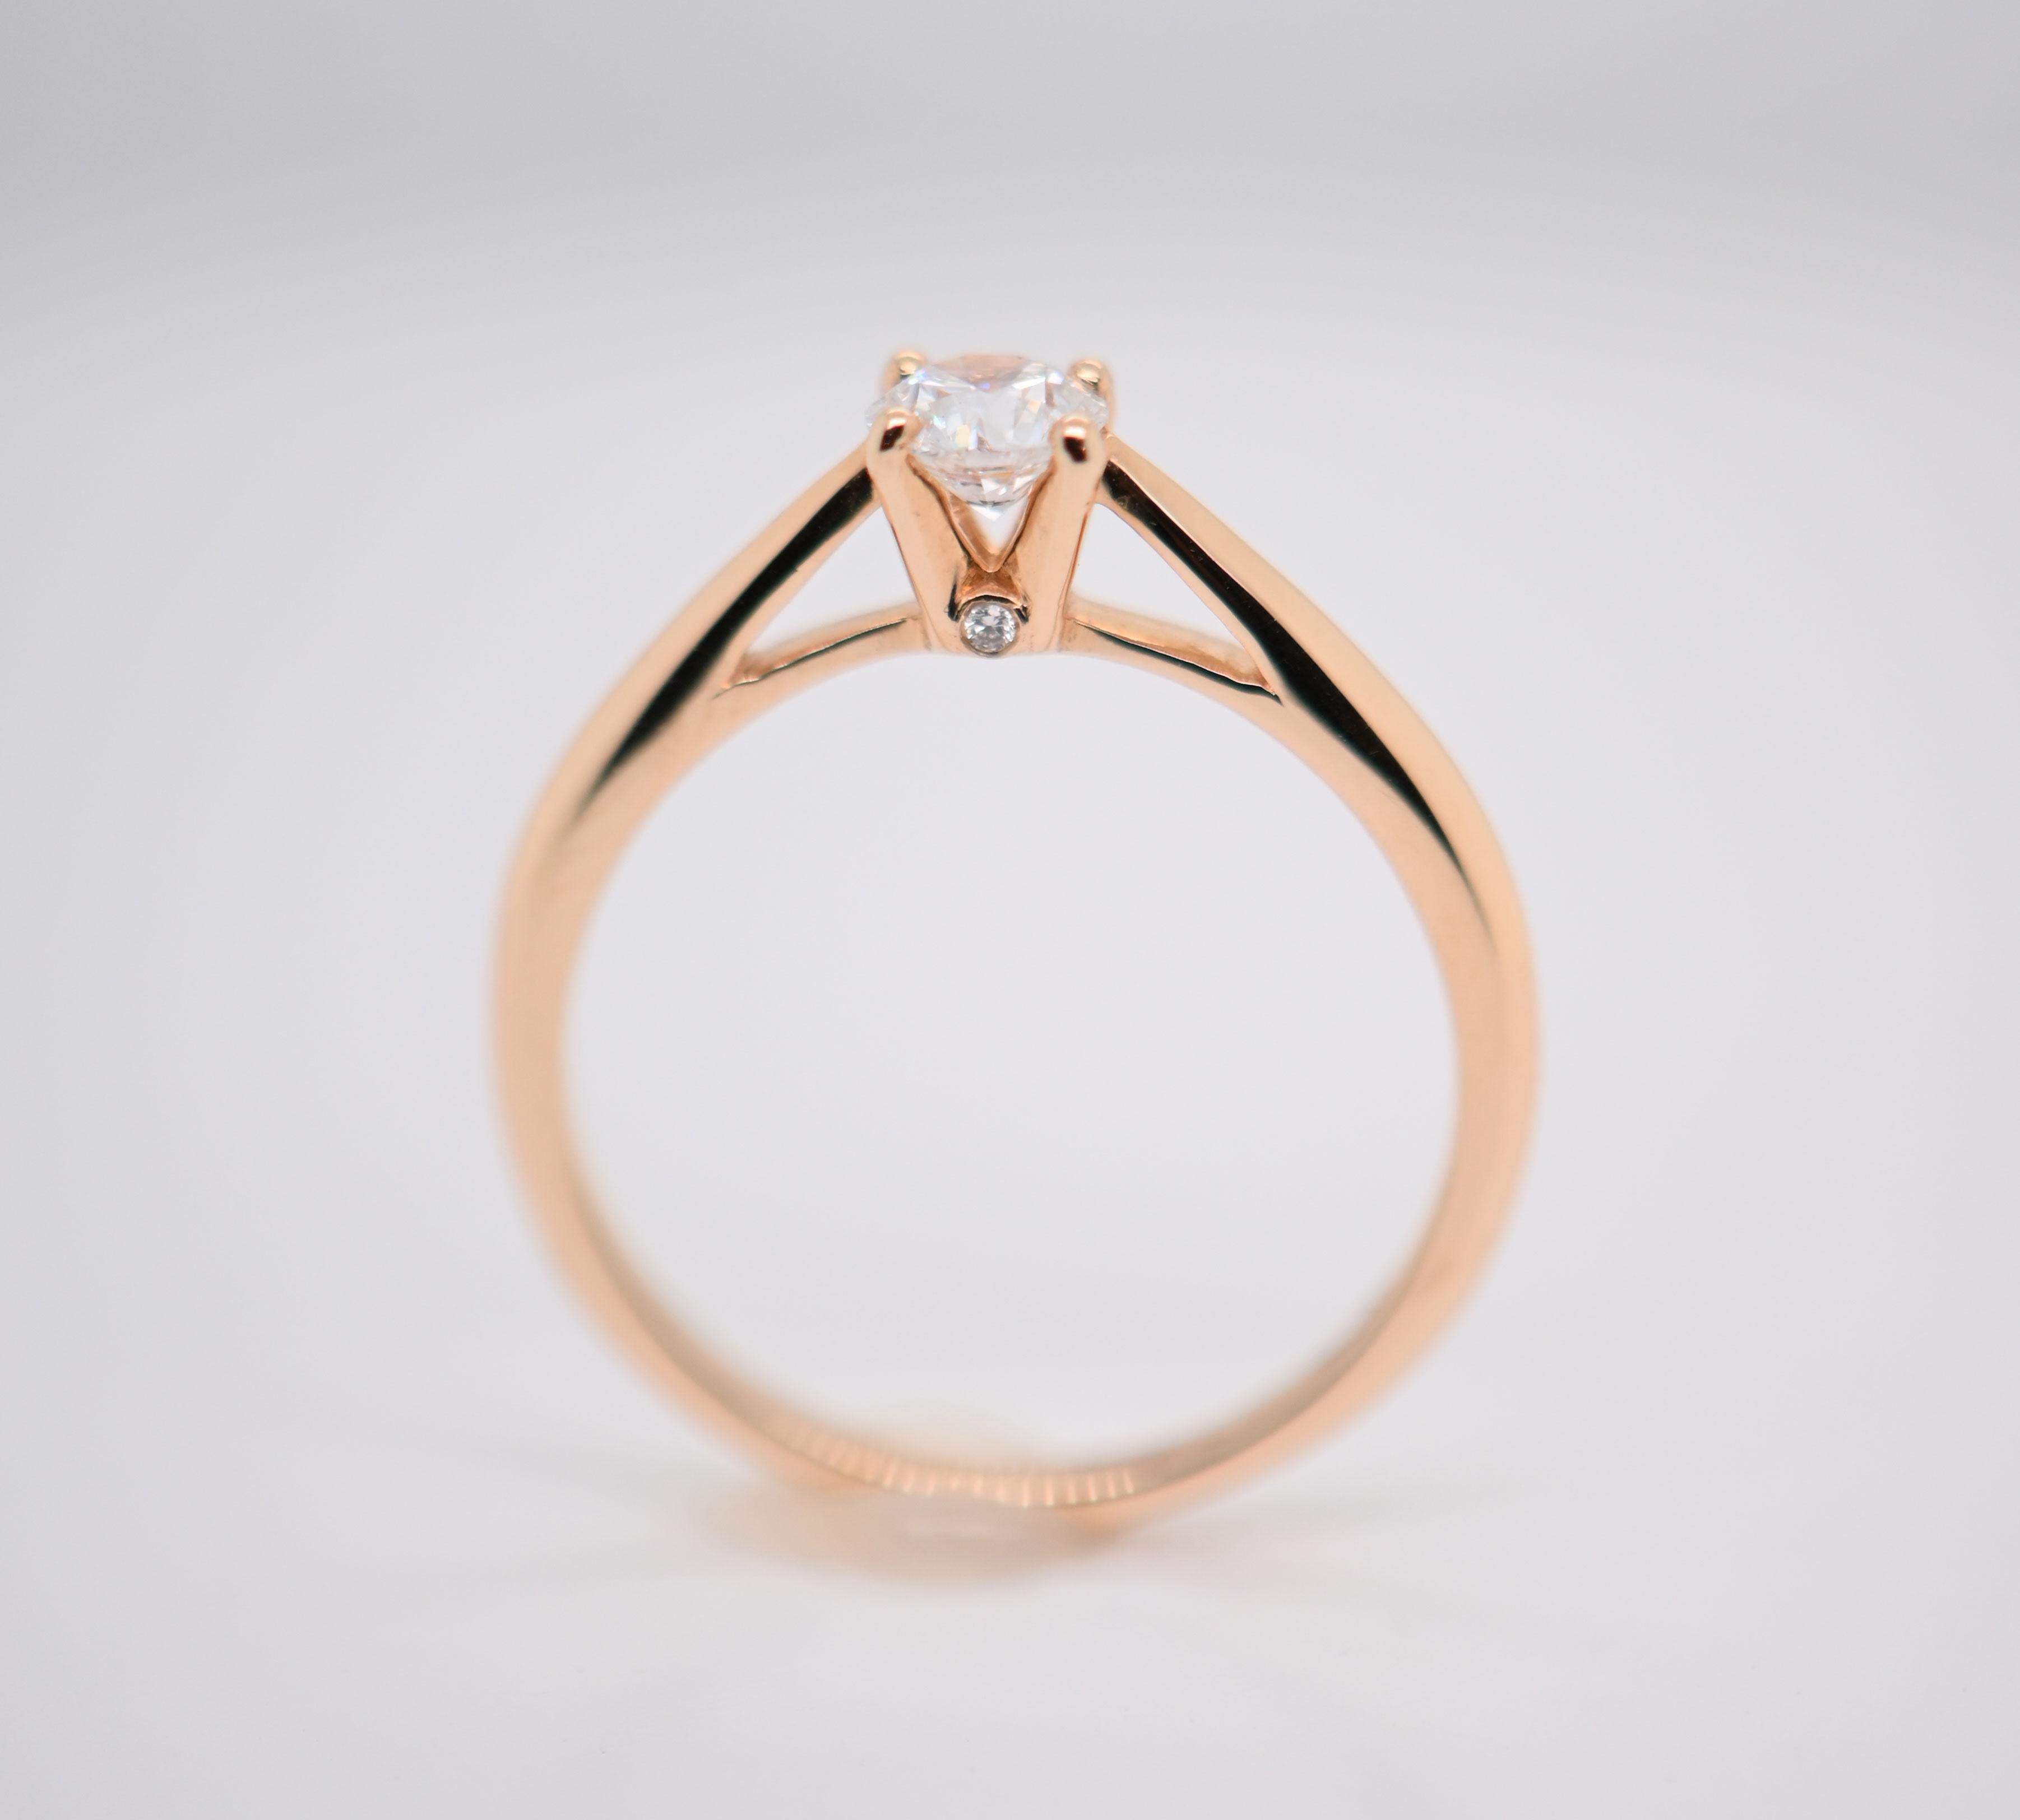 Tauchen Sie ein in die Welt des Luxus mit diesem Solitärring aus Roségold.

Die wichtigsten Details:

MATERIAL: Dieser aus 18 Karat Roségold gefertigte Ring verkörpert die Zartheit und Wärme des Edelmetalls...

Drei funkelnde Diamanten: Drei